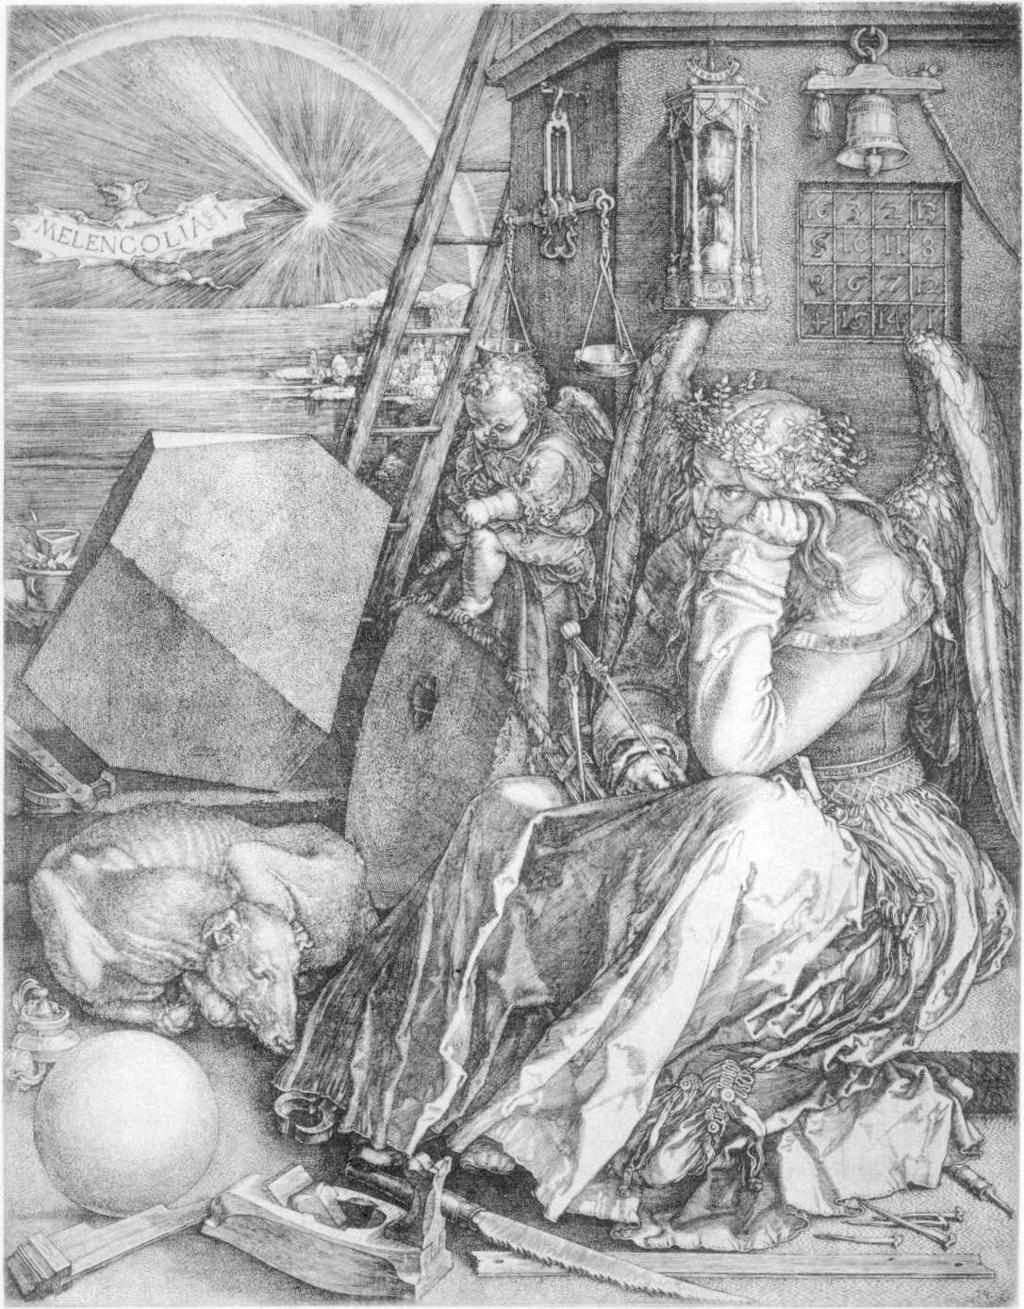 Melancolia I, como Dürer denomina a gravura que mostra um céu noturno iluminado apenas por um cometa, é o trabalho de maior conteúdo simbólico dentre todos os trabalhos deste artista.